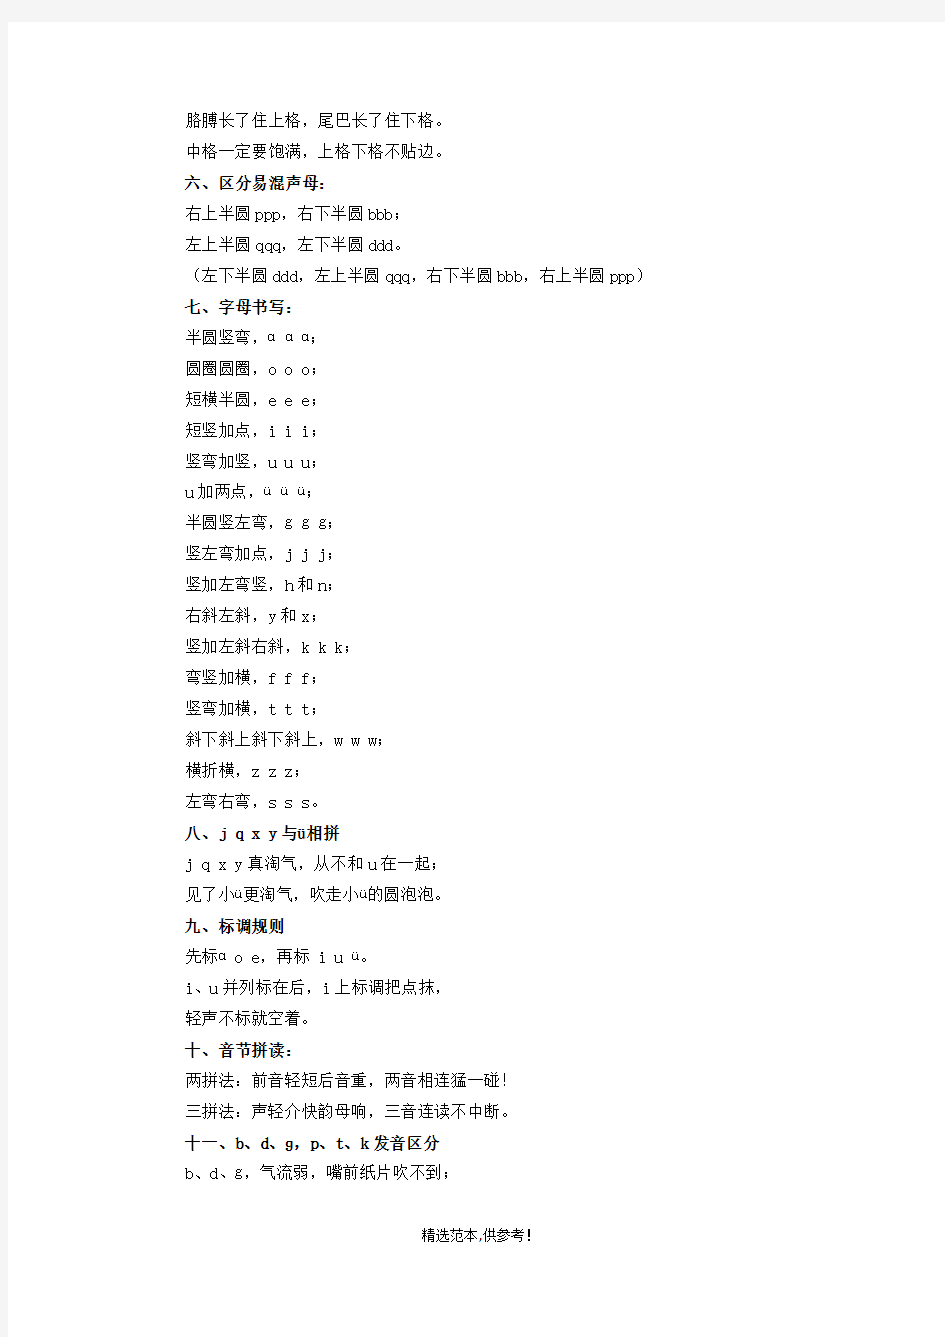 汉语拼音口诀大全完整可编辑版